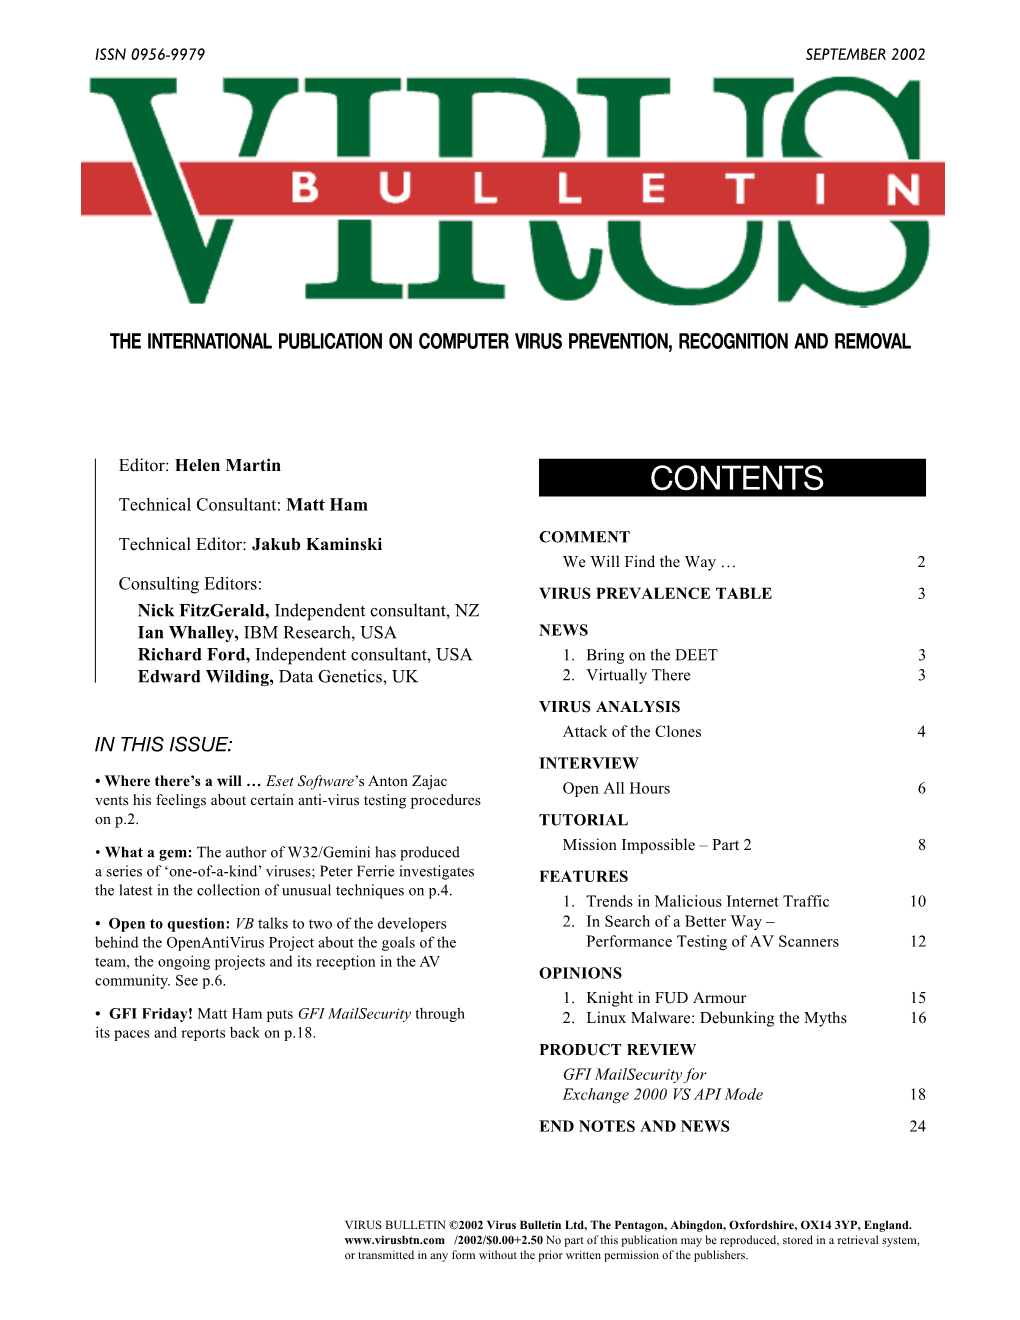 Virus Bulletin, September 2002